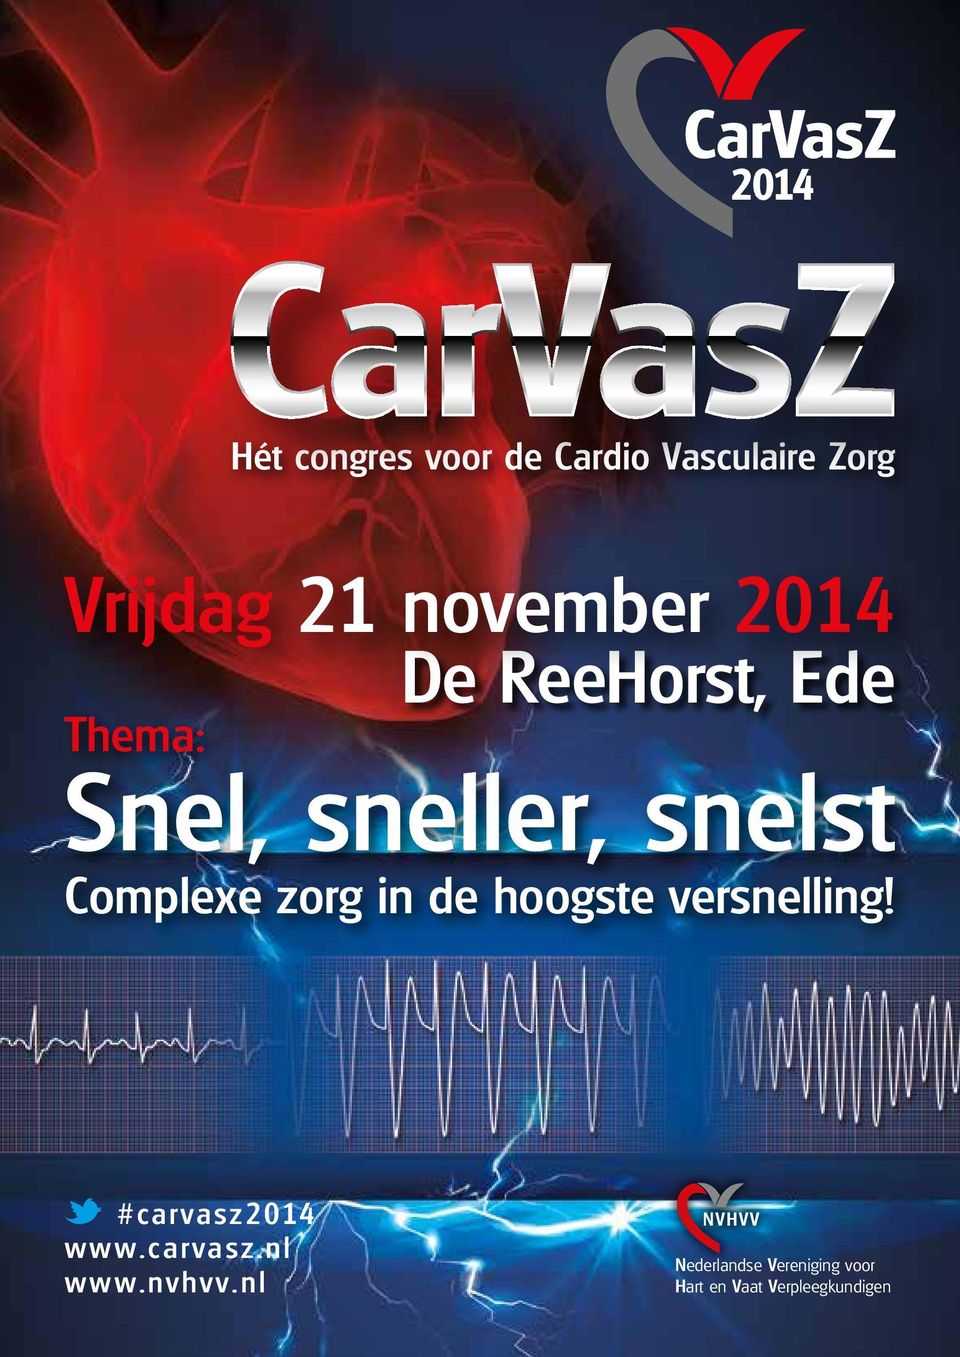 zorg in de hoogste versnelling! #carvasz2014 www.carvasz.nl www.